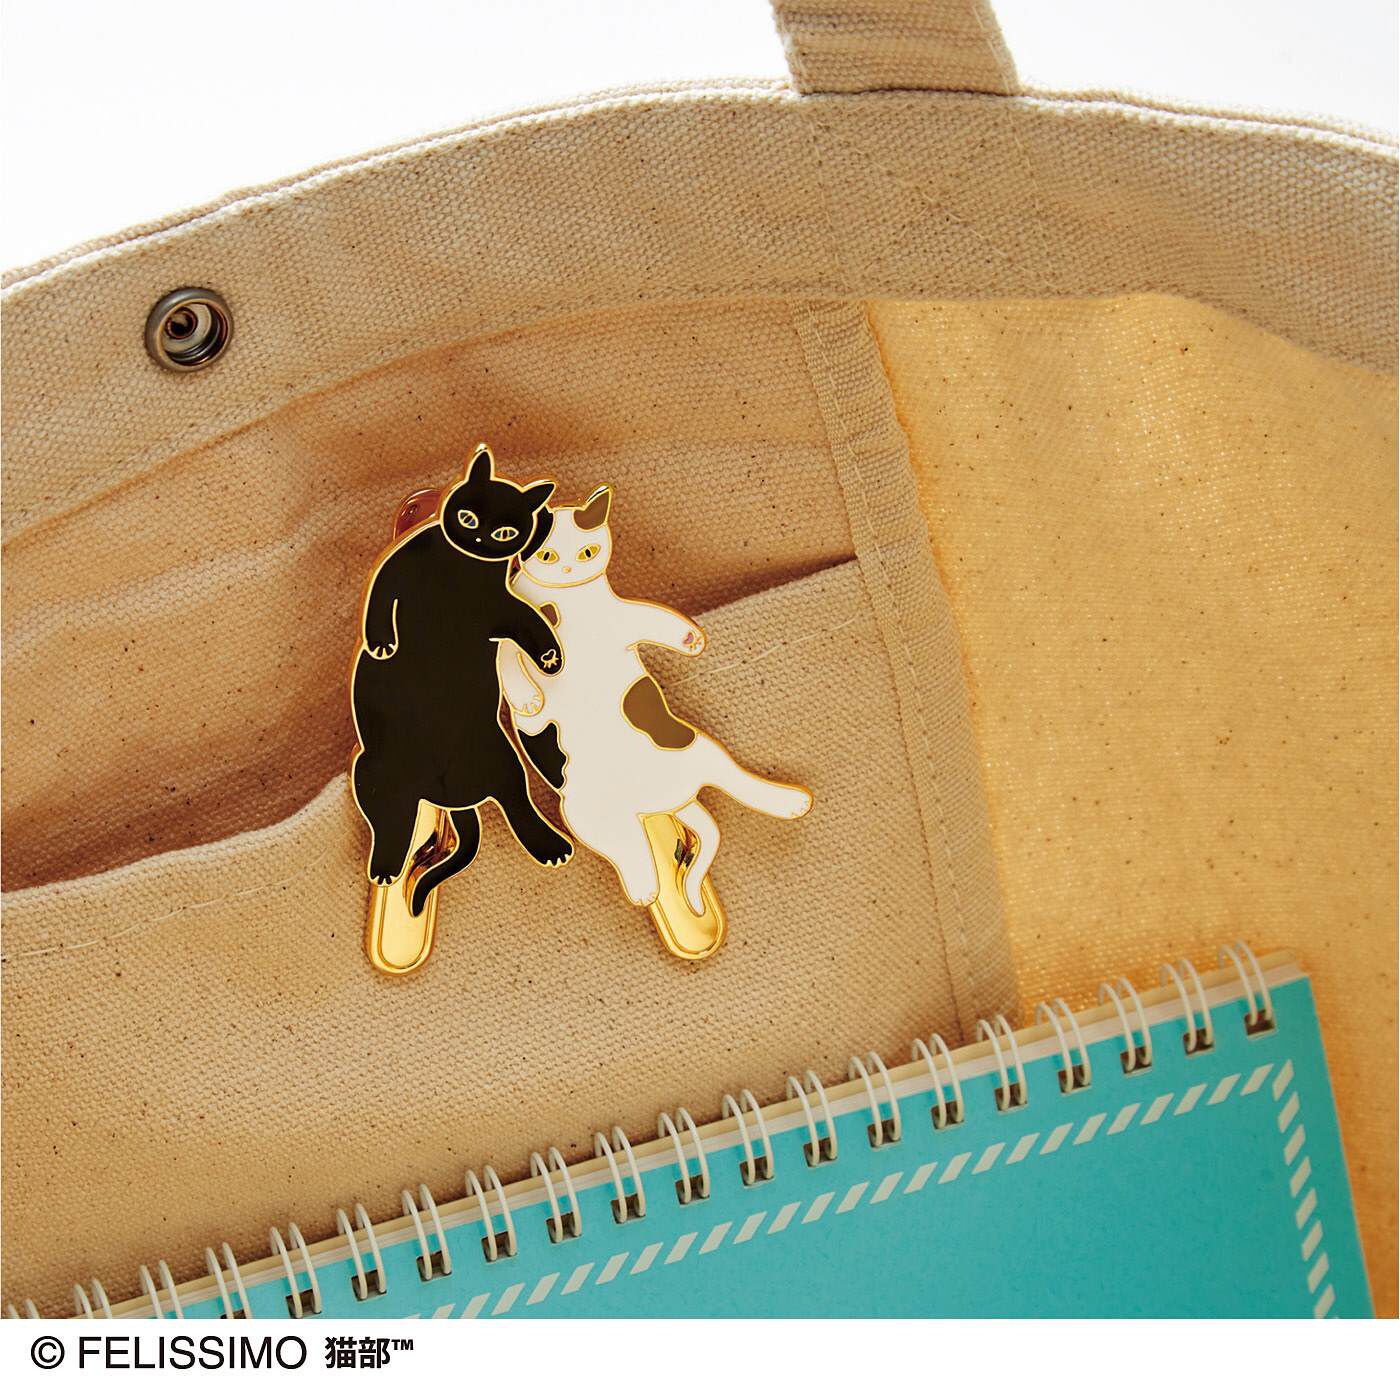 Real Stock|猫さんのおなかをナデナデすると瞬時に発見できる　キークリップ|バッグの内ポケットに挟んで、かぎを収納すれば安心。